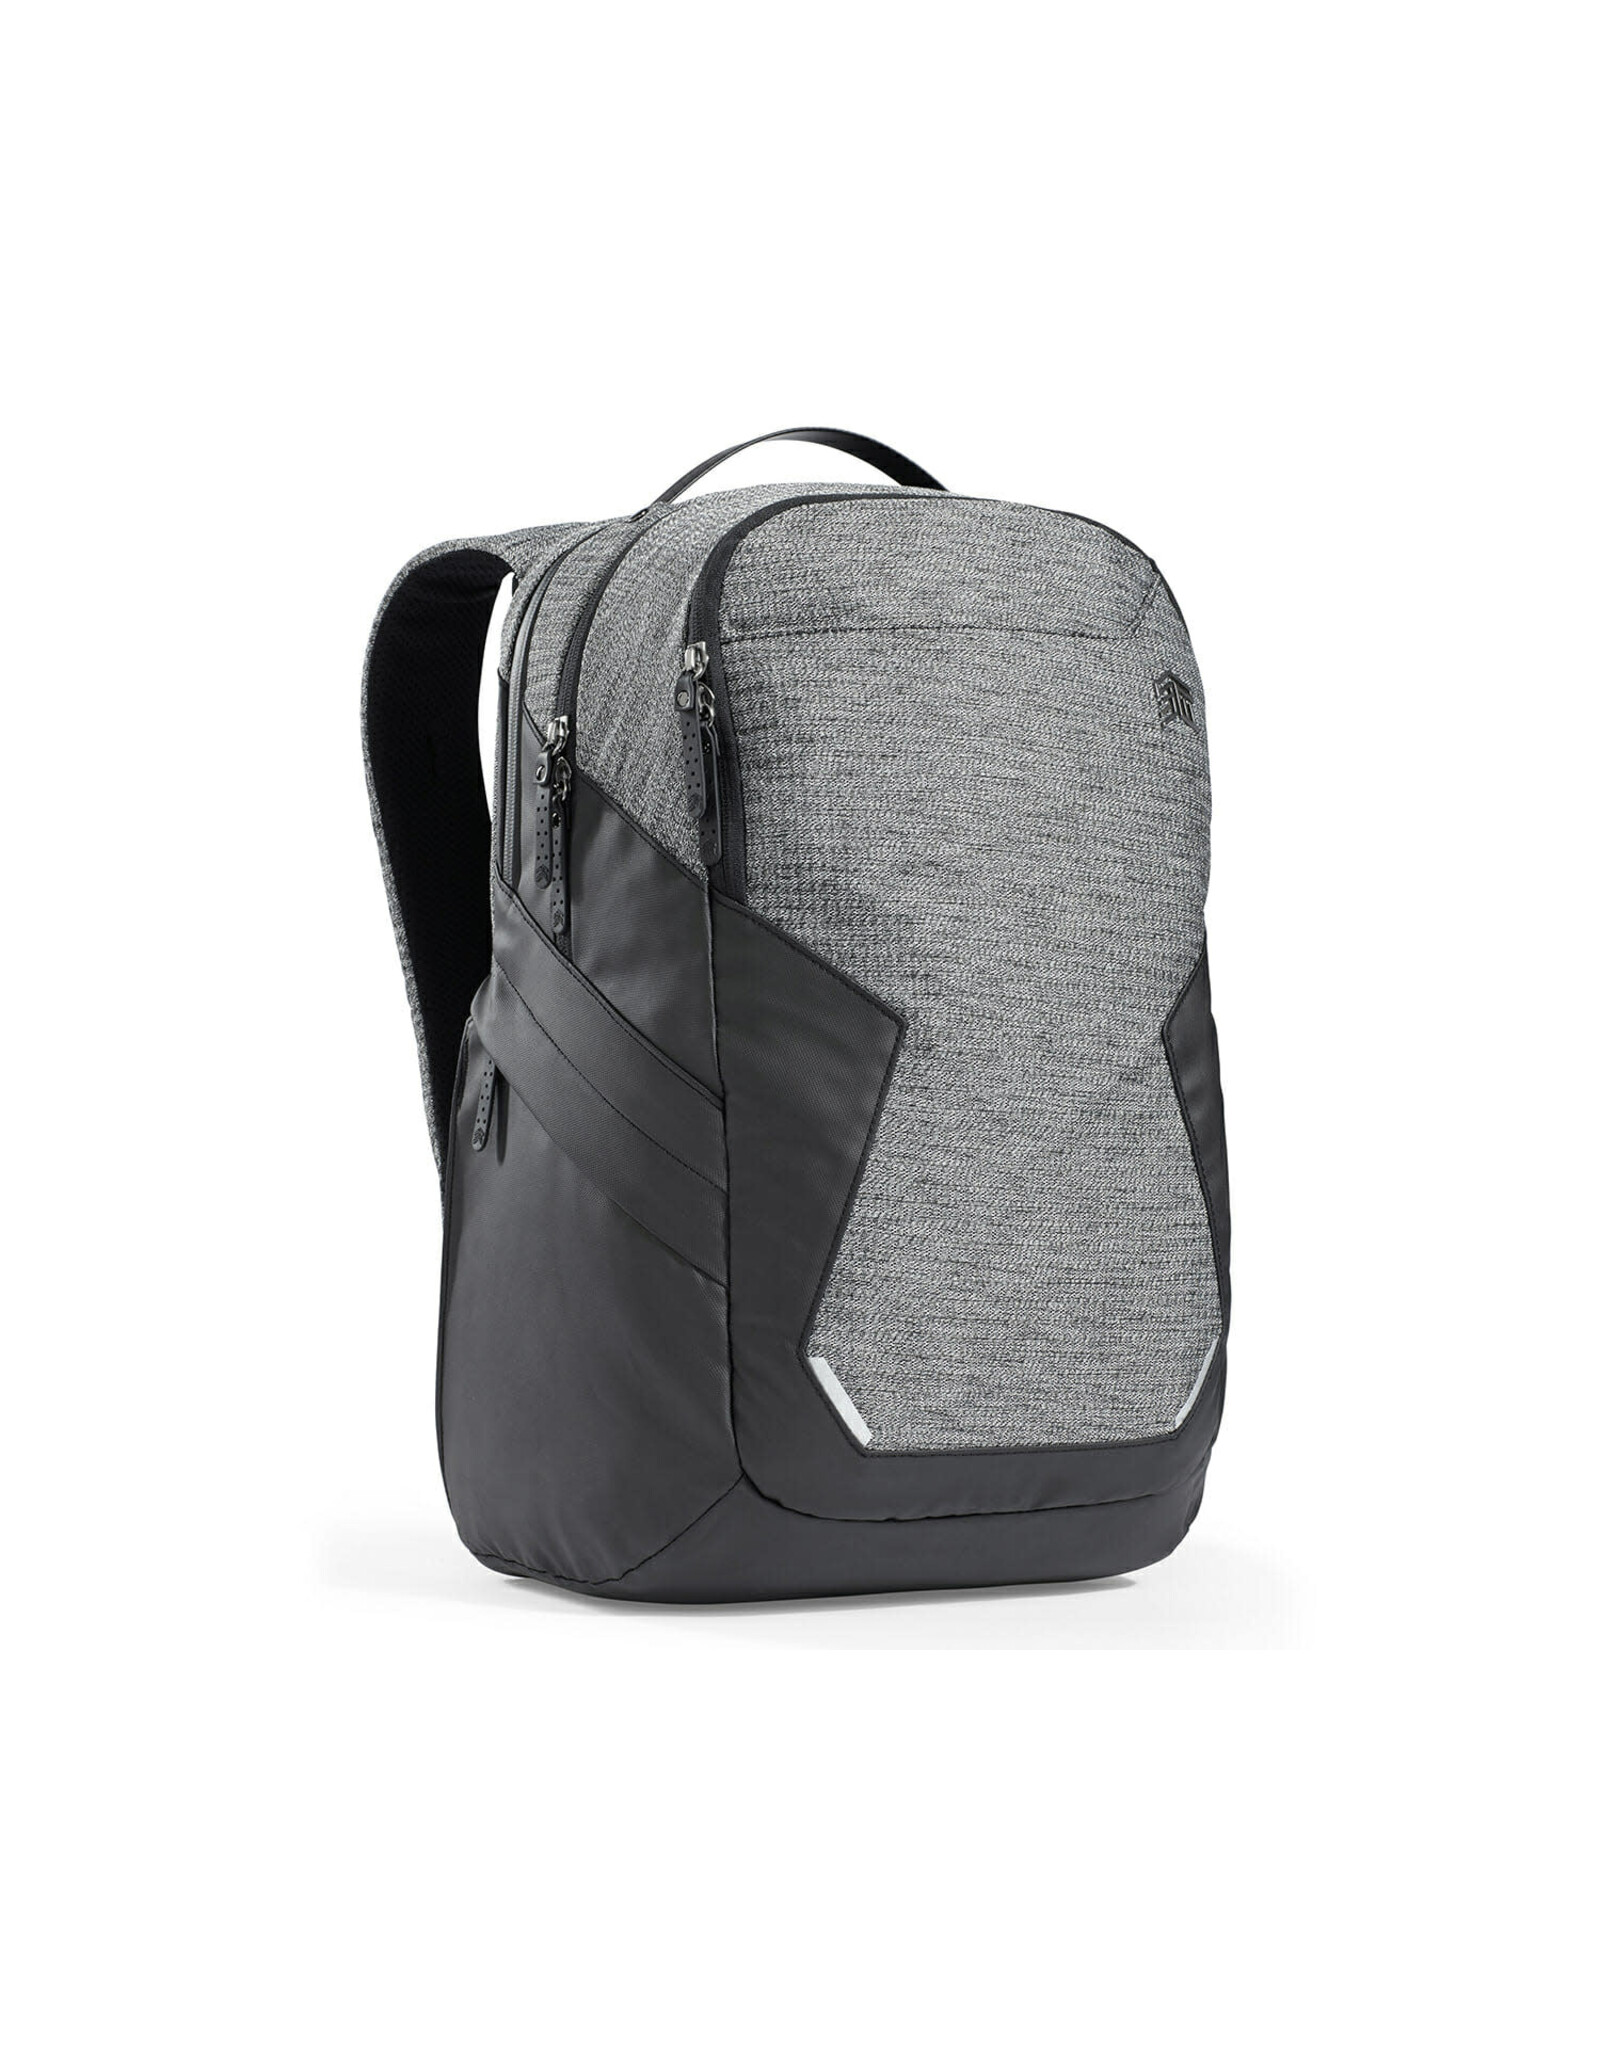 STM STM Myth Backpack 18l suits 13"/15" MacBook Air/Pro - Granite Black